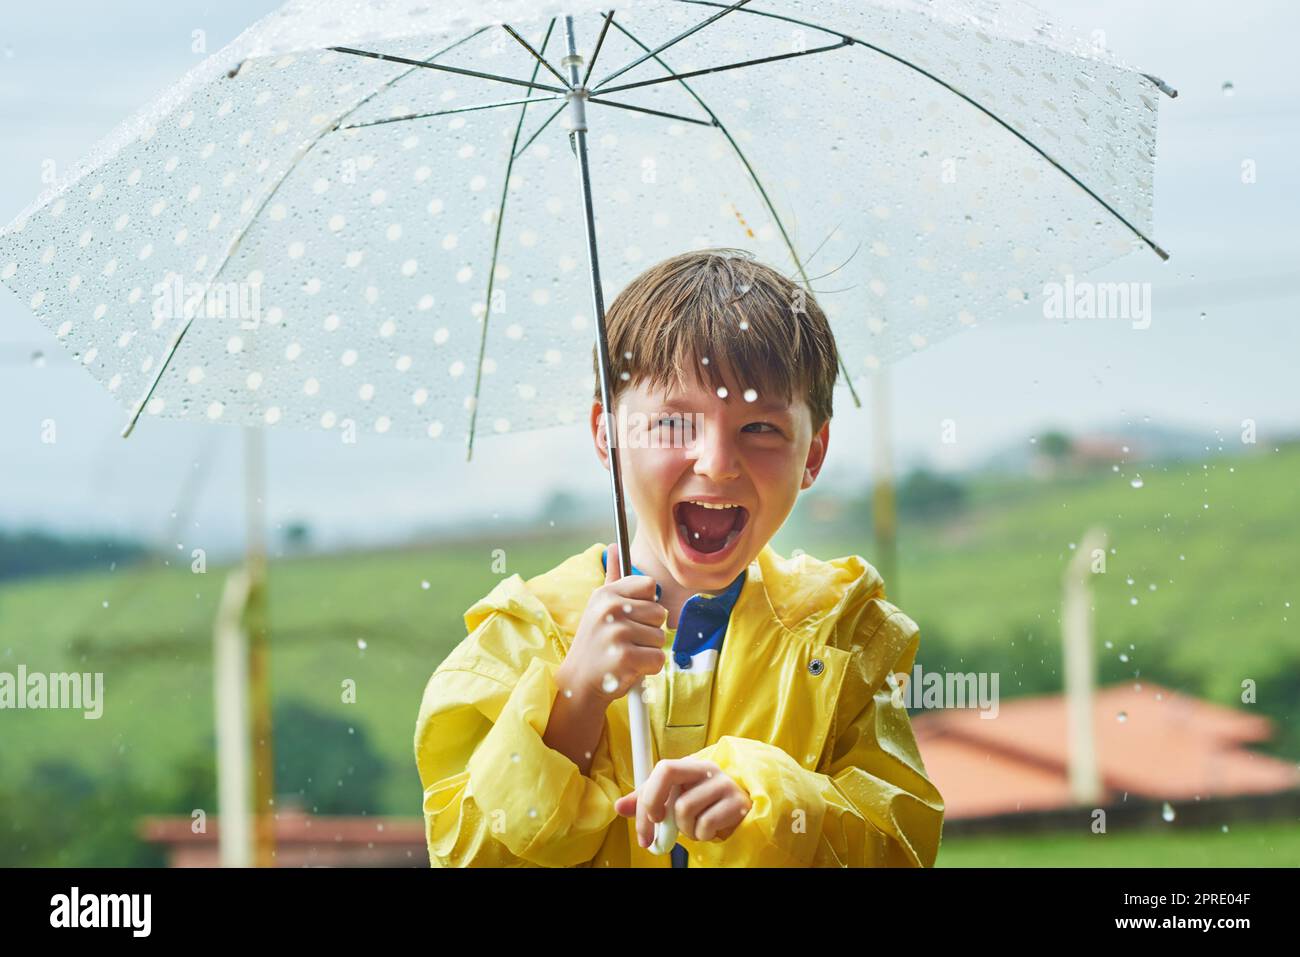 Die Regenzeit ist seine beliebteste Jahreszeit. Porträt eines fröhlichen kleinen Jungen, der an einem regnerischen Tag mit einem Regenschirm draußen steht. Stockfoto